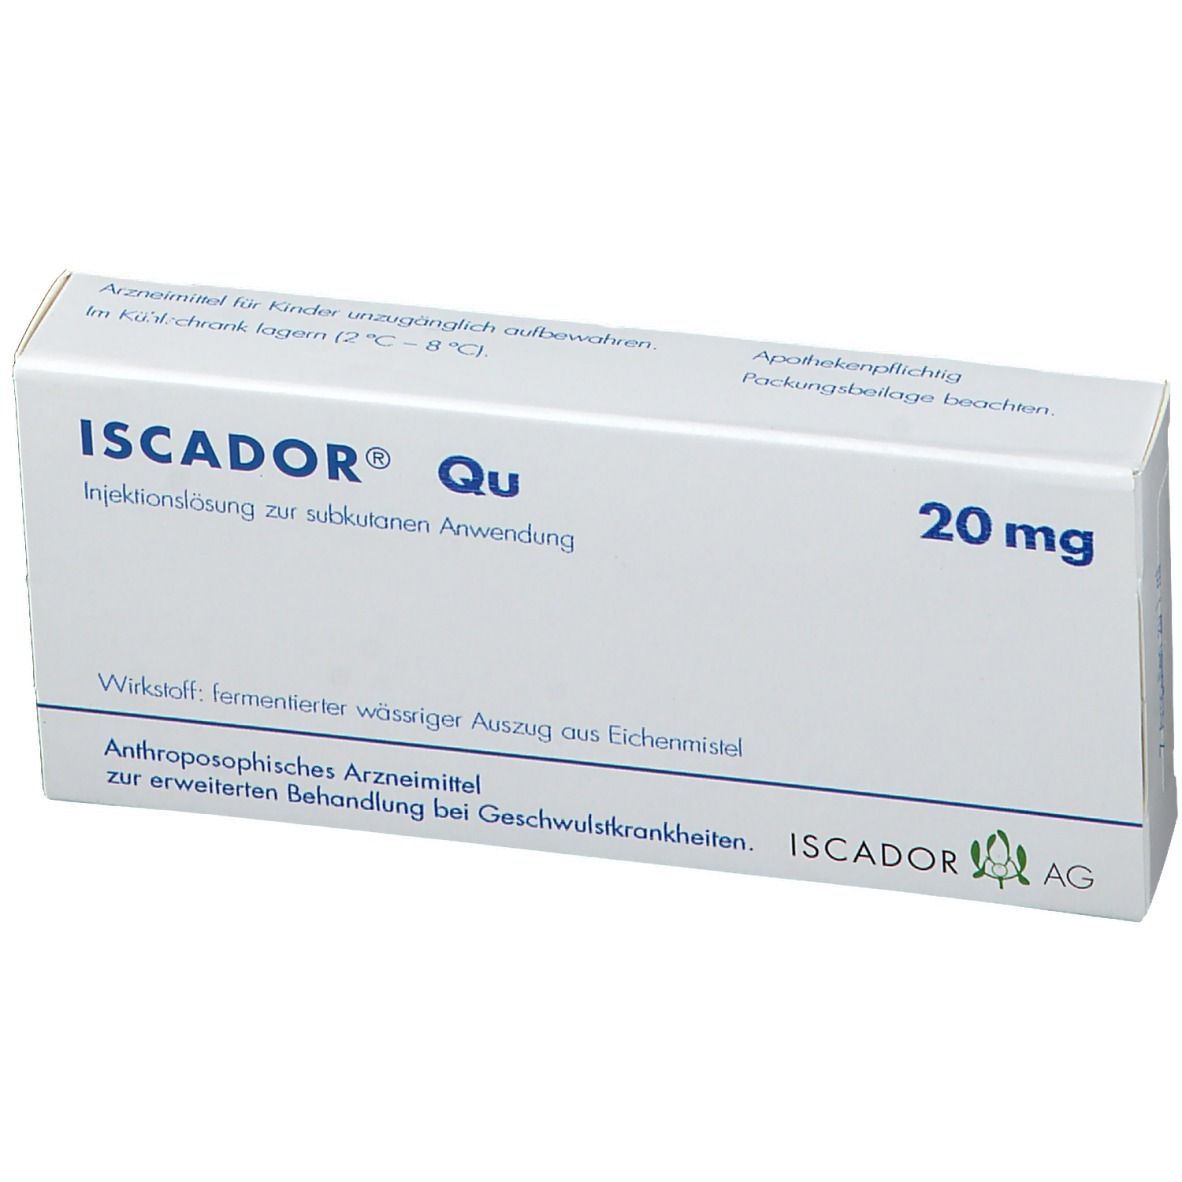 ISCADOR® Qu 20 mg